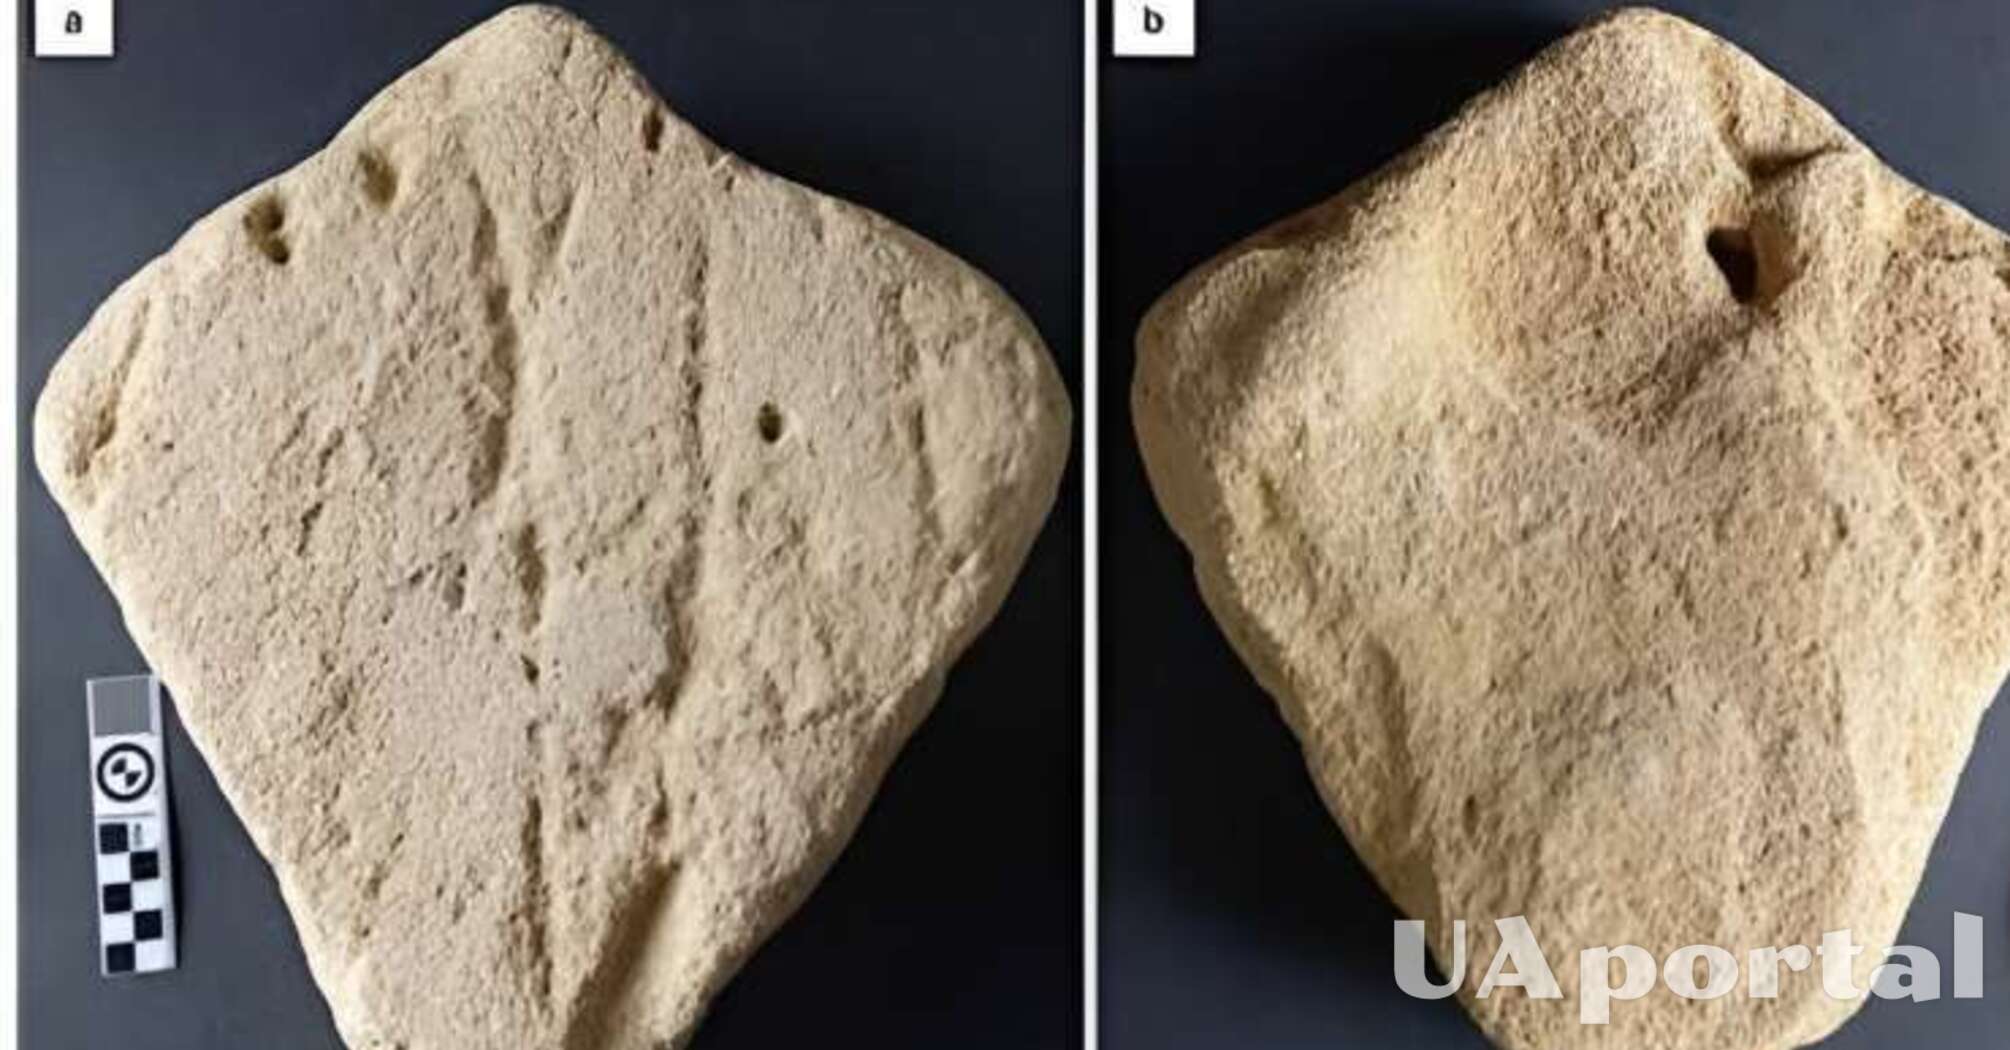 Археологи обнаружили на территории Южно-Африканской республики песчаную скульптуру голубого ската в возрасте 130 тысяч лет